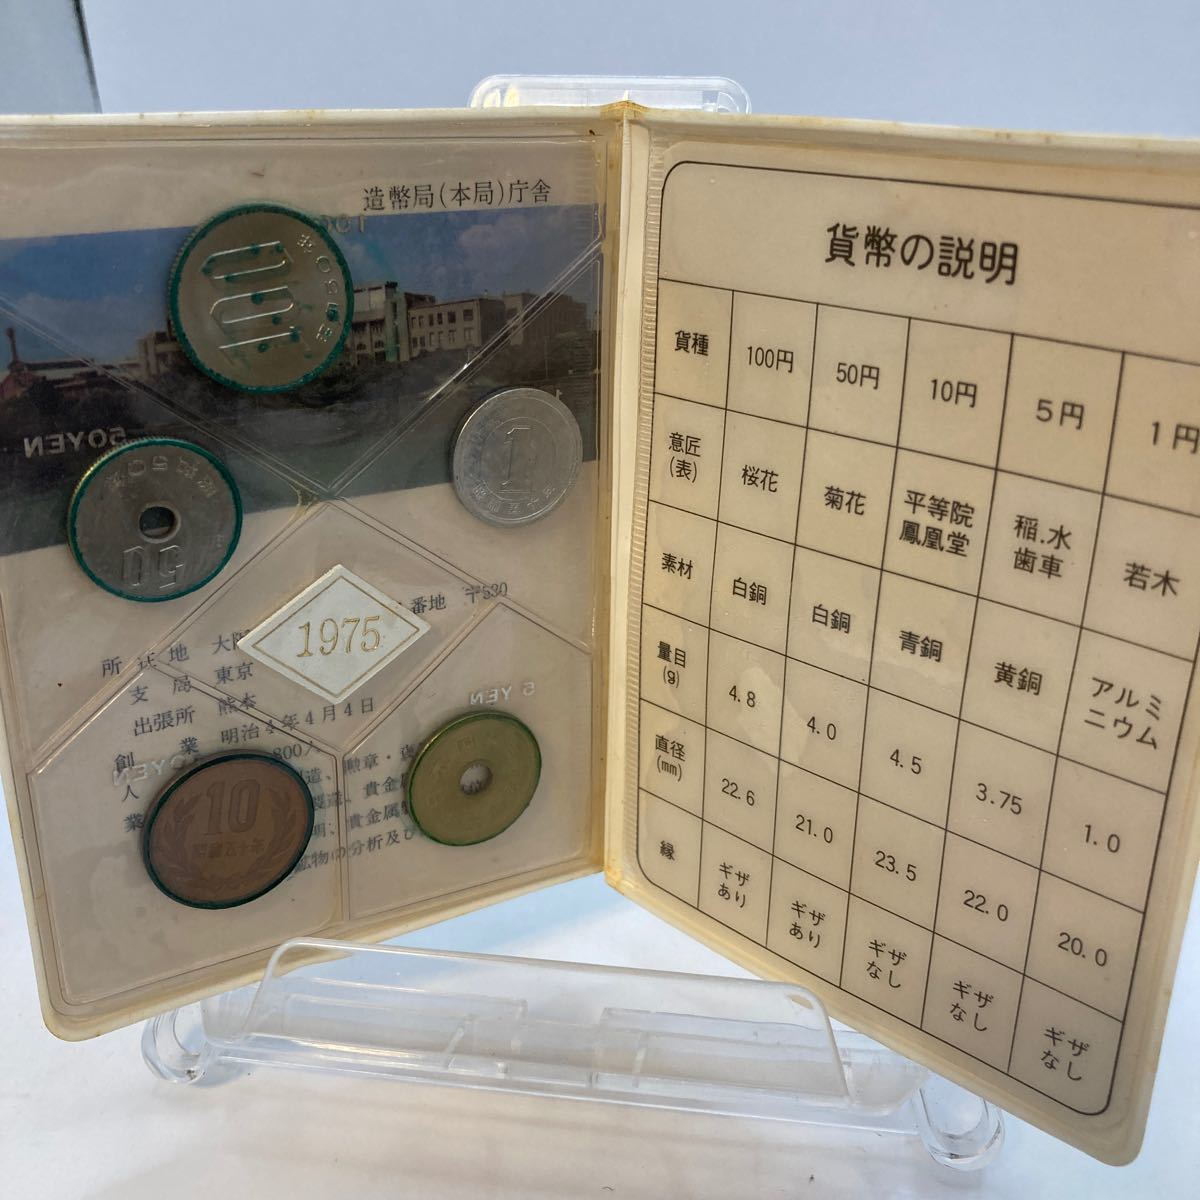 1975年 昭和50年 通常 ミントセット 貨幣セット 額面166円 記念硬貨 記念貨幣 貨幣組合 コイン coin_画像2